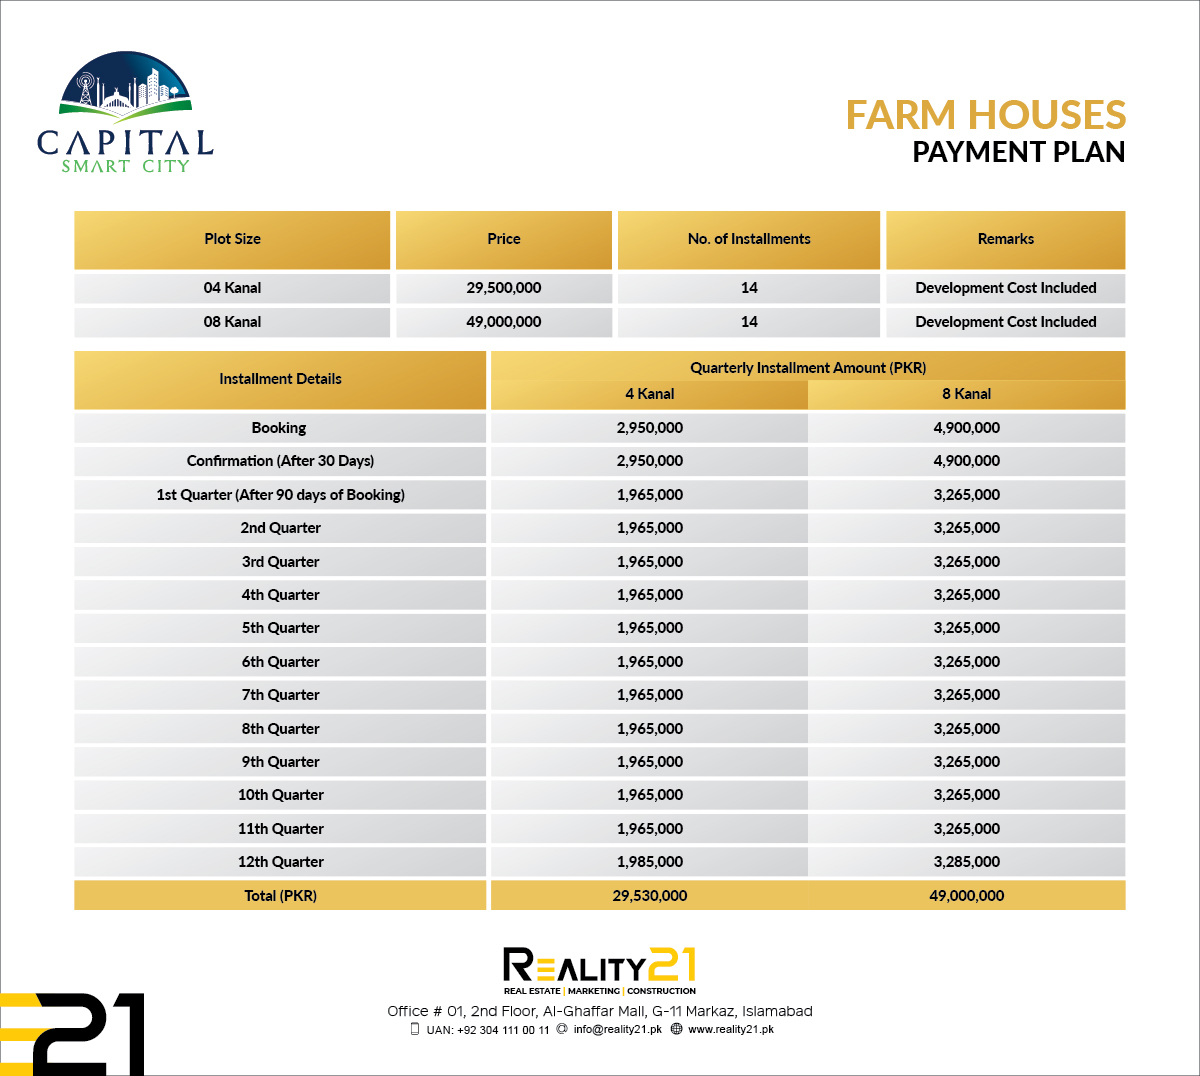 Capital Smart city Farm houses Payment Plan